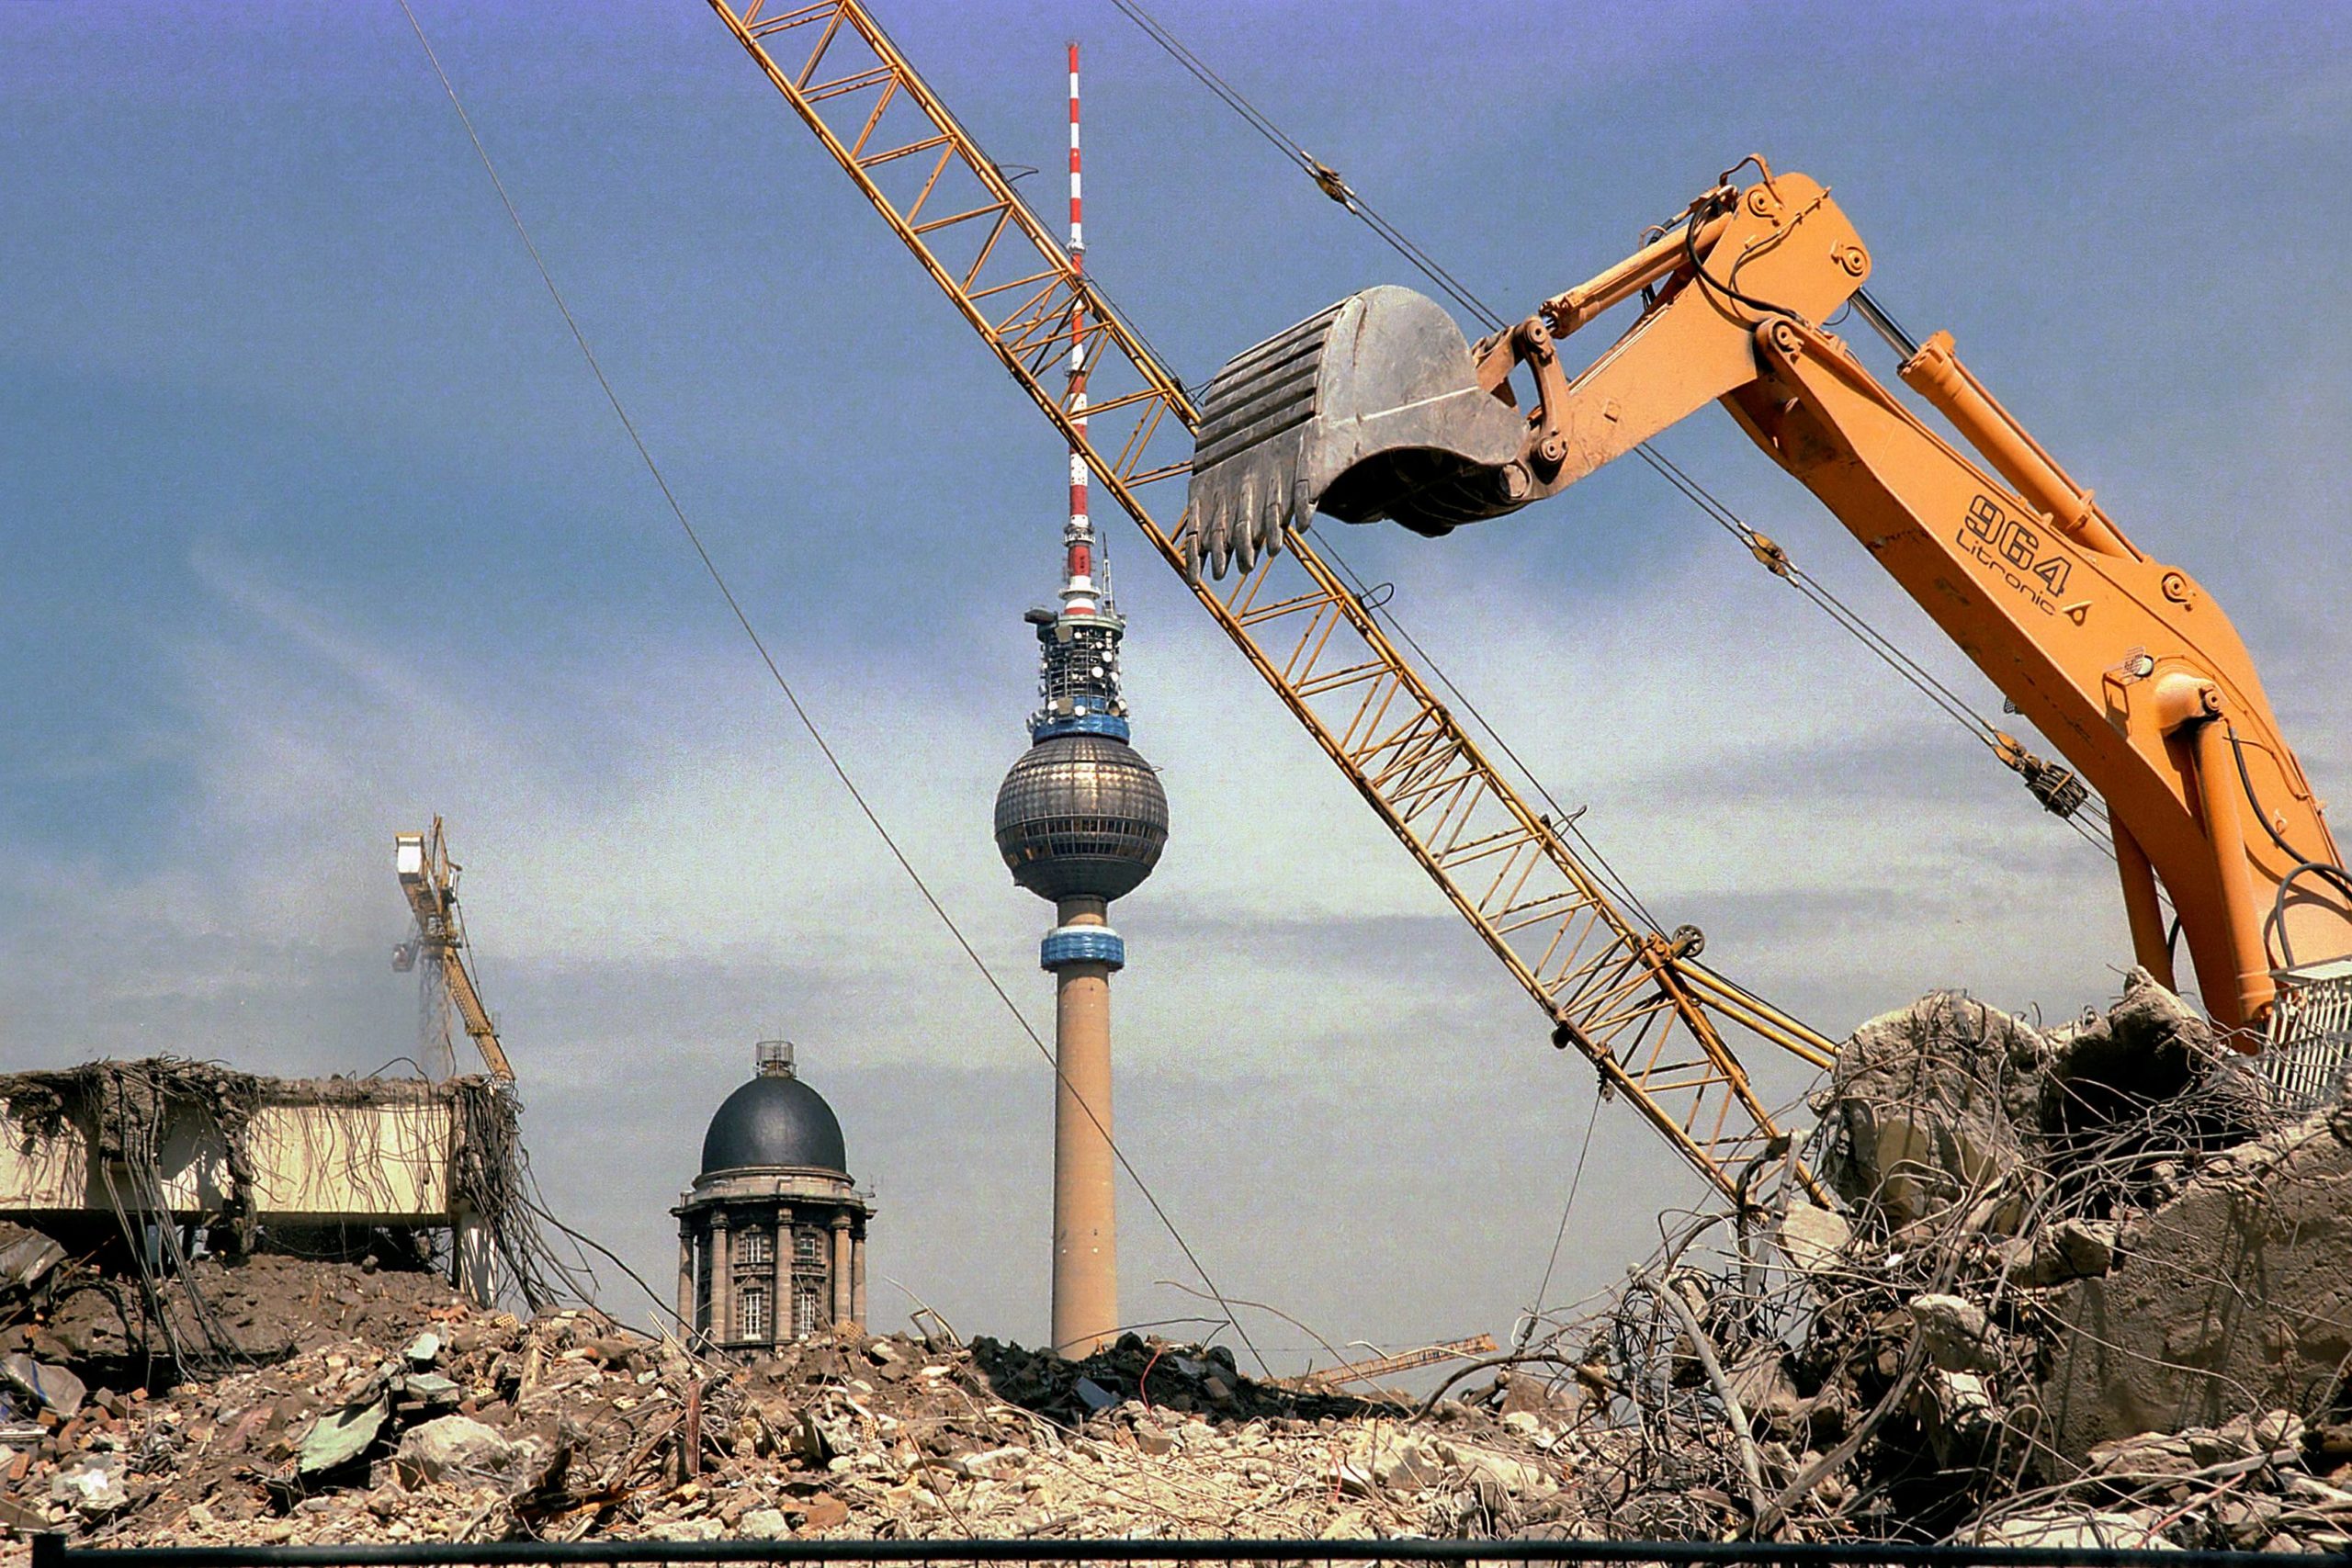 Abriss in Berlin: Abrissarbeiten vor dem Fernsehturm, 1998. Foto: Imago/Lem